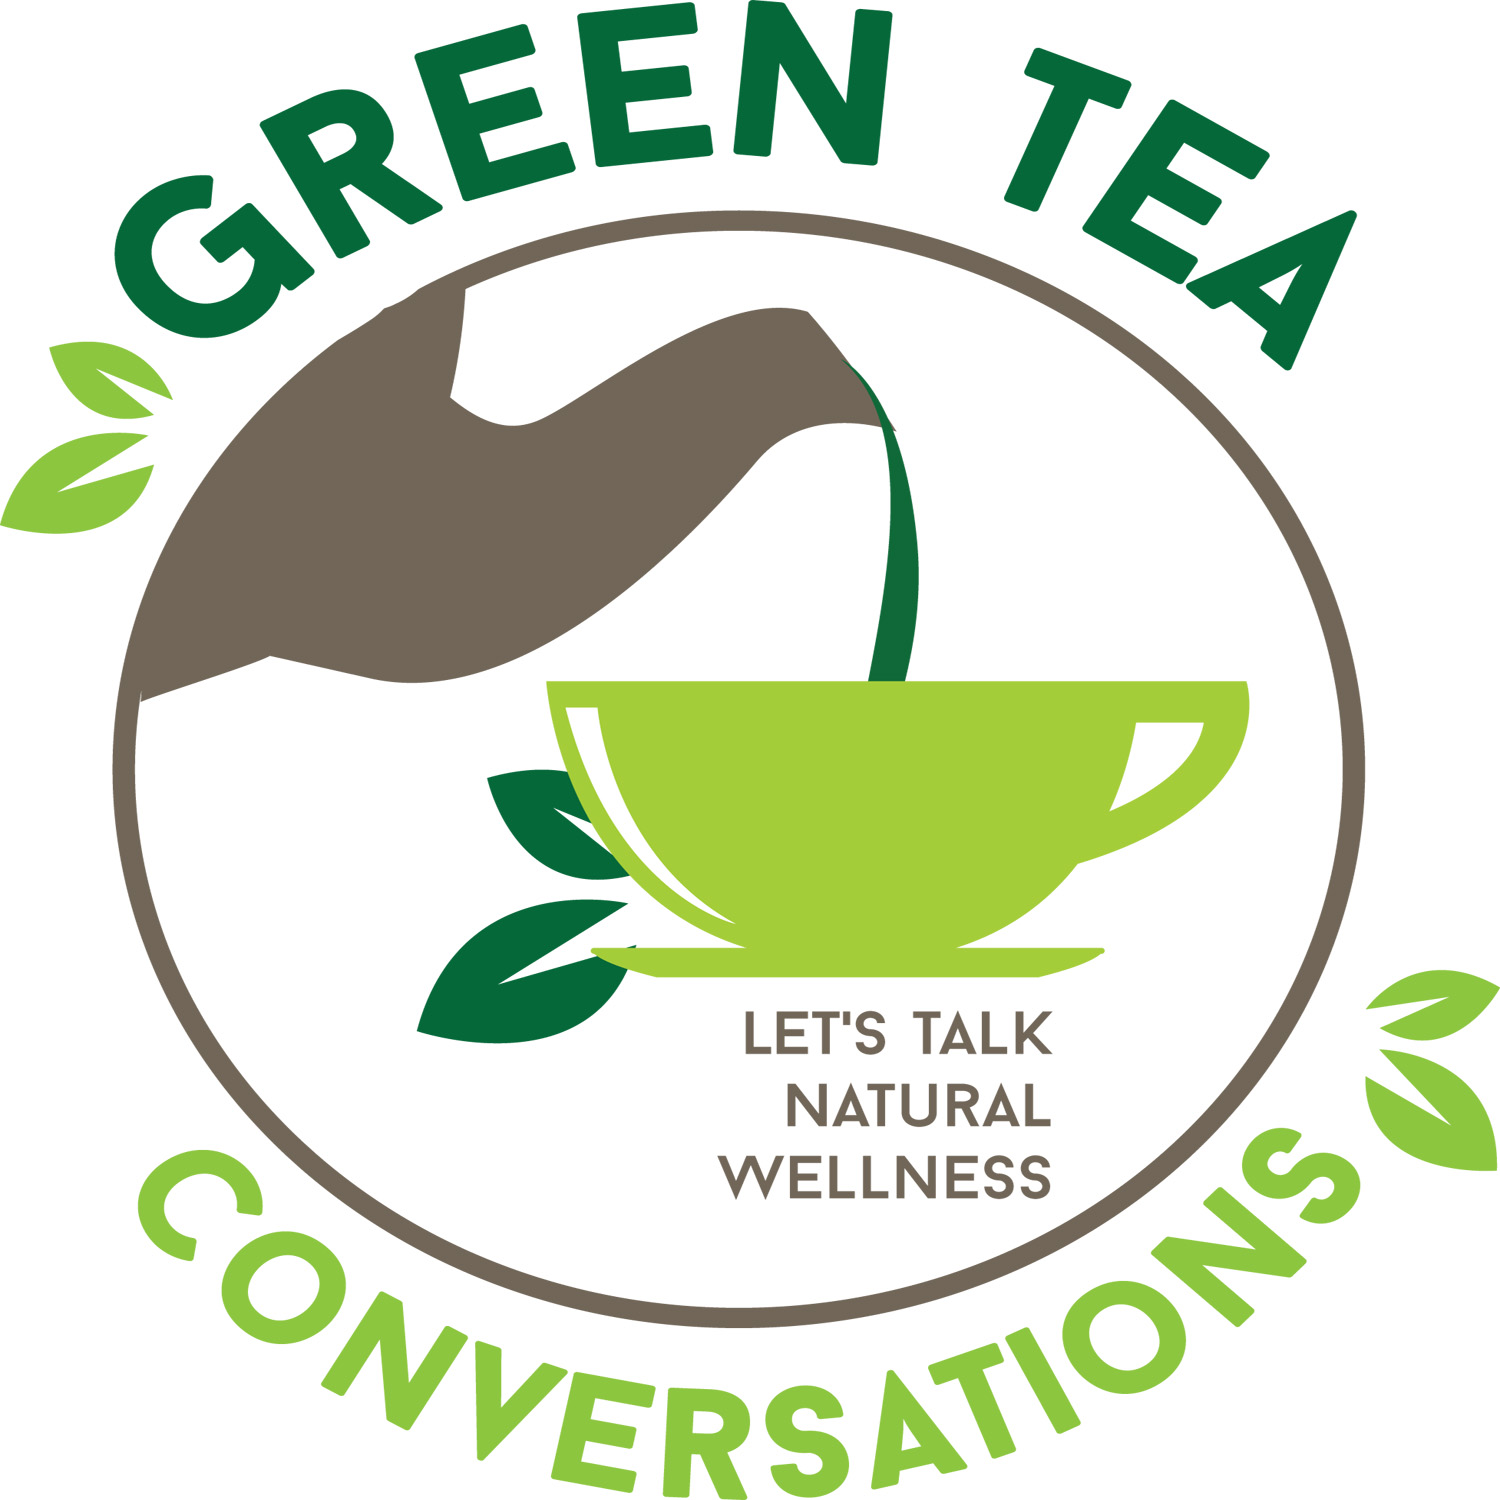 Green Tea Conversations